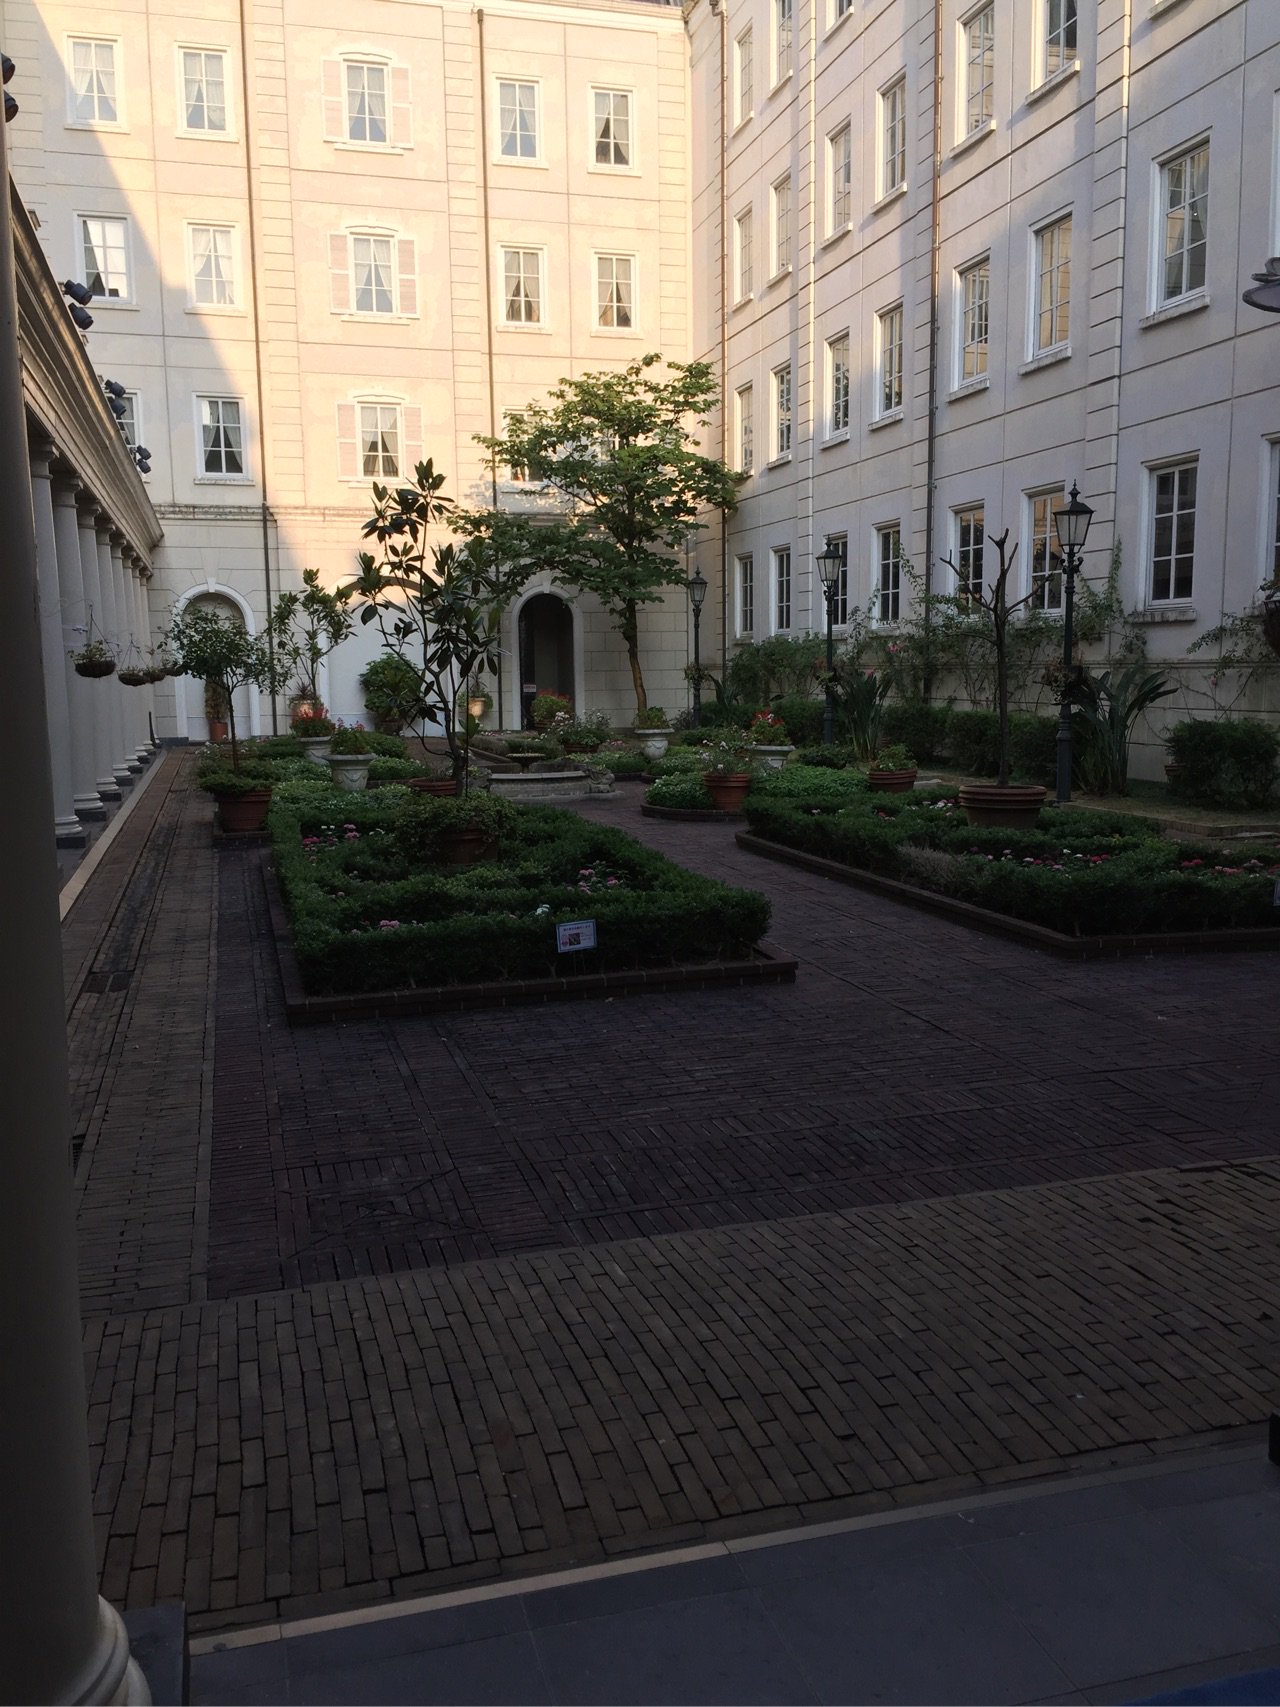 ホテルアムステルダムの中庭。 https://t.co/fmZeR5lDm8